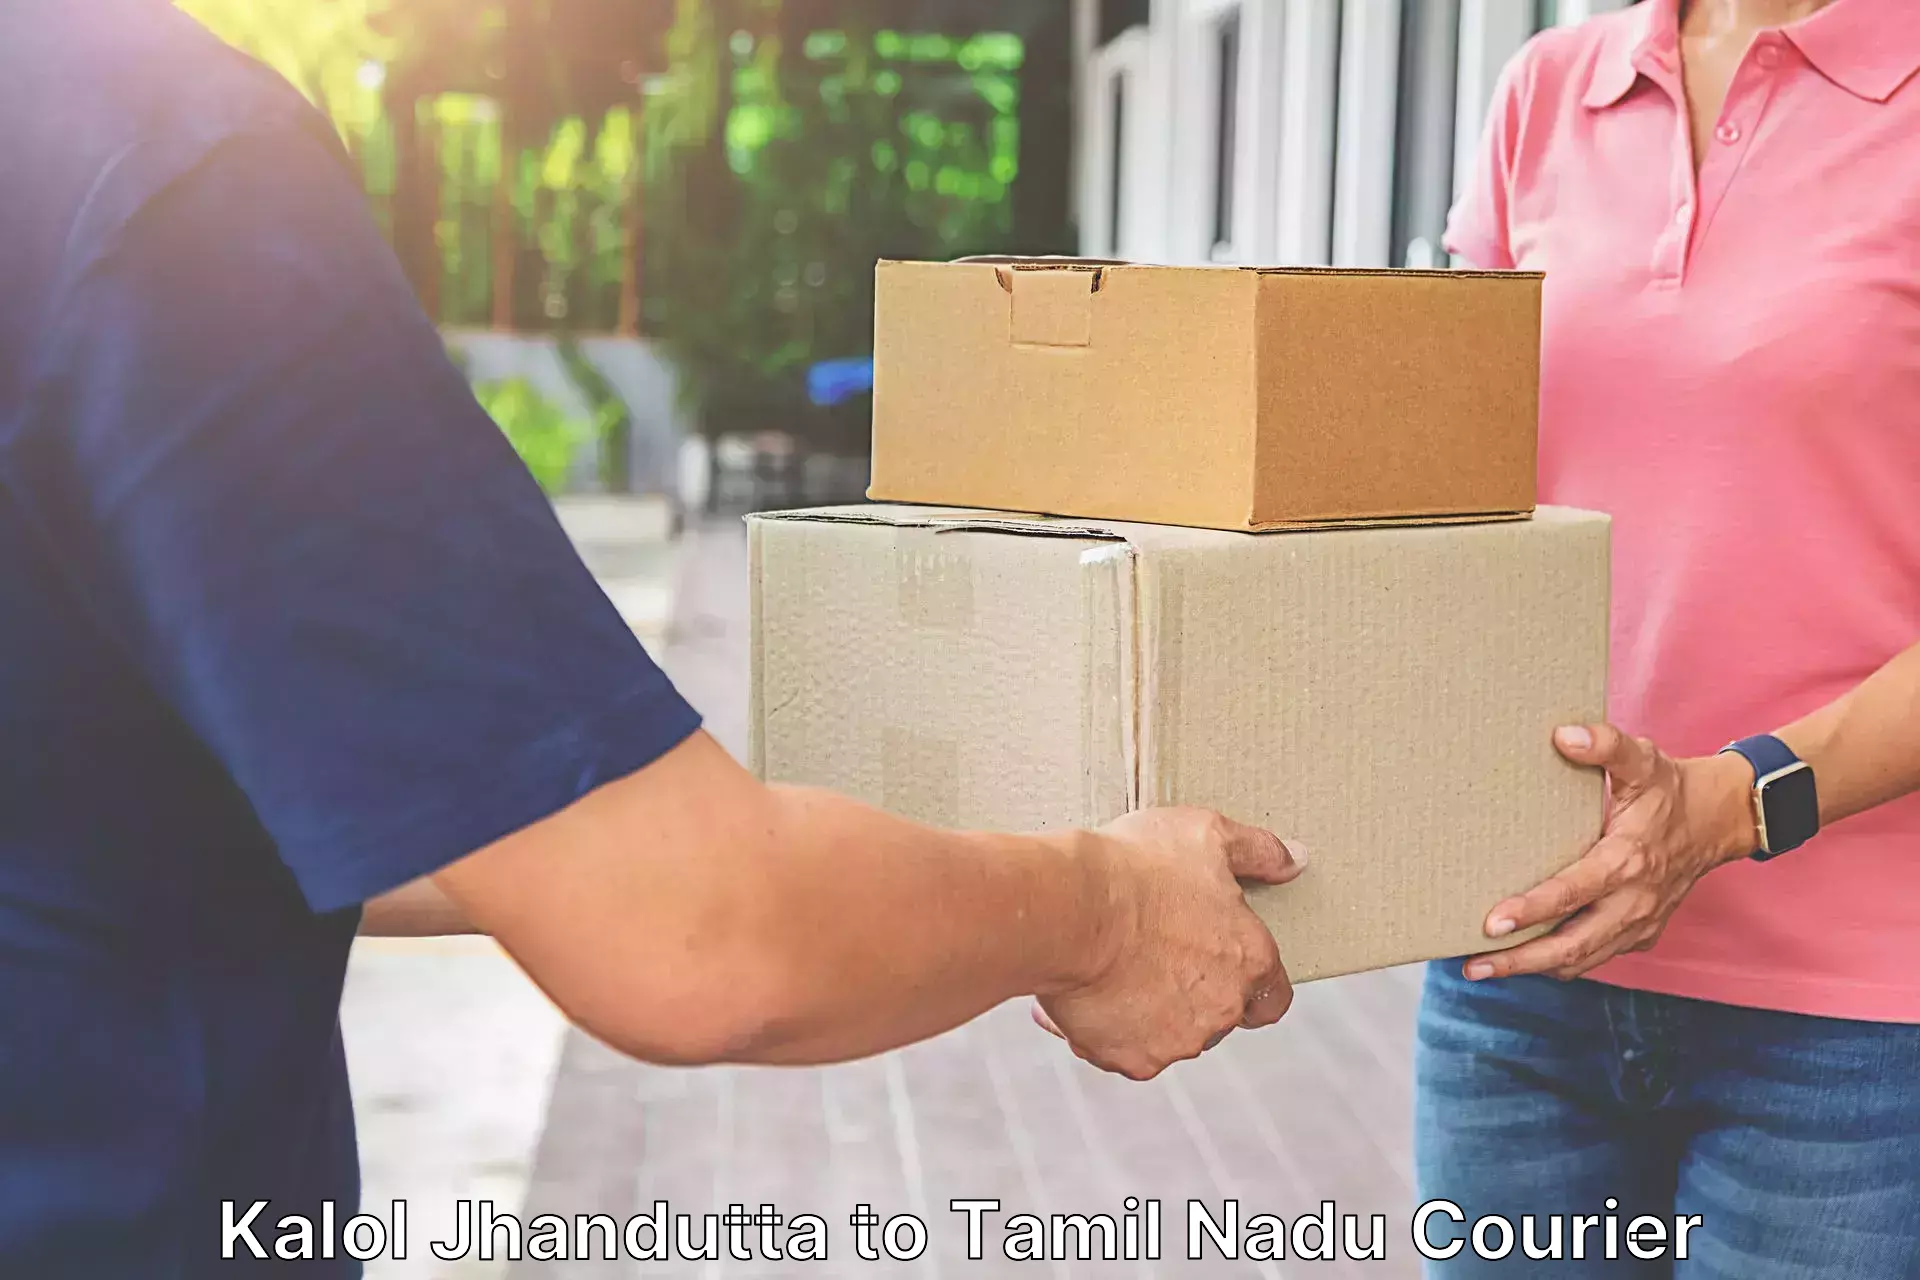 Customer-oriented courier services Kalol Jhandutta to Tamil Nadu